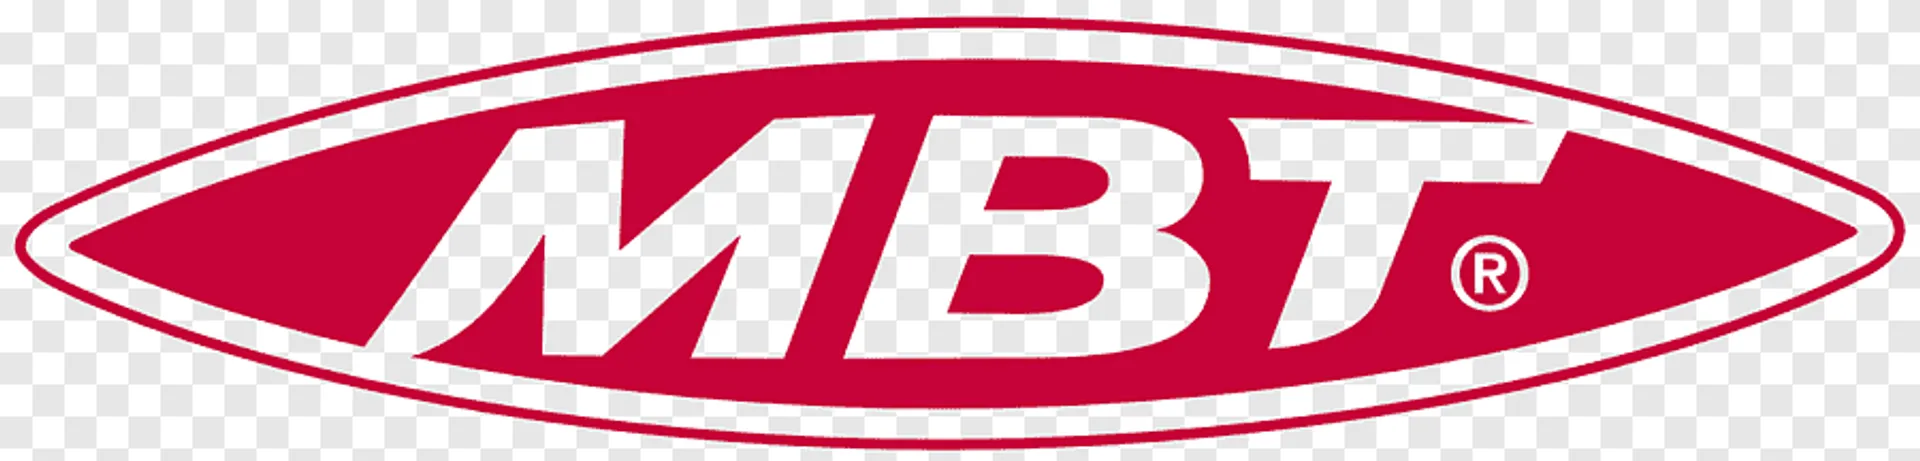 MBT logo